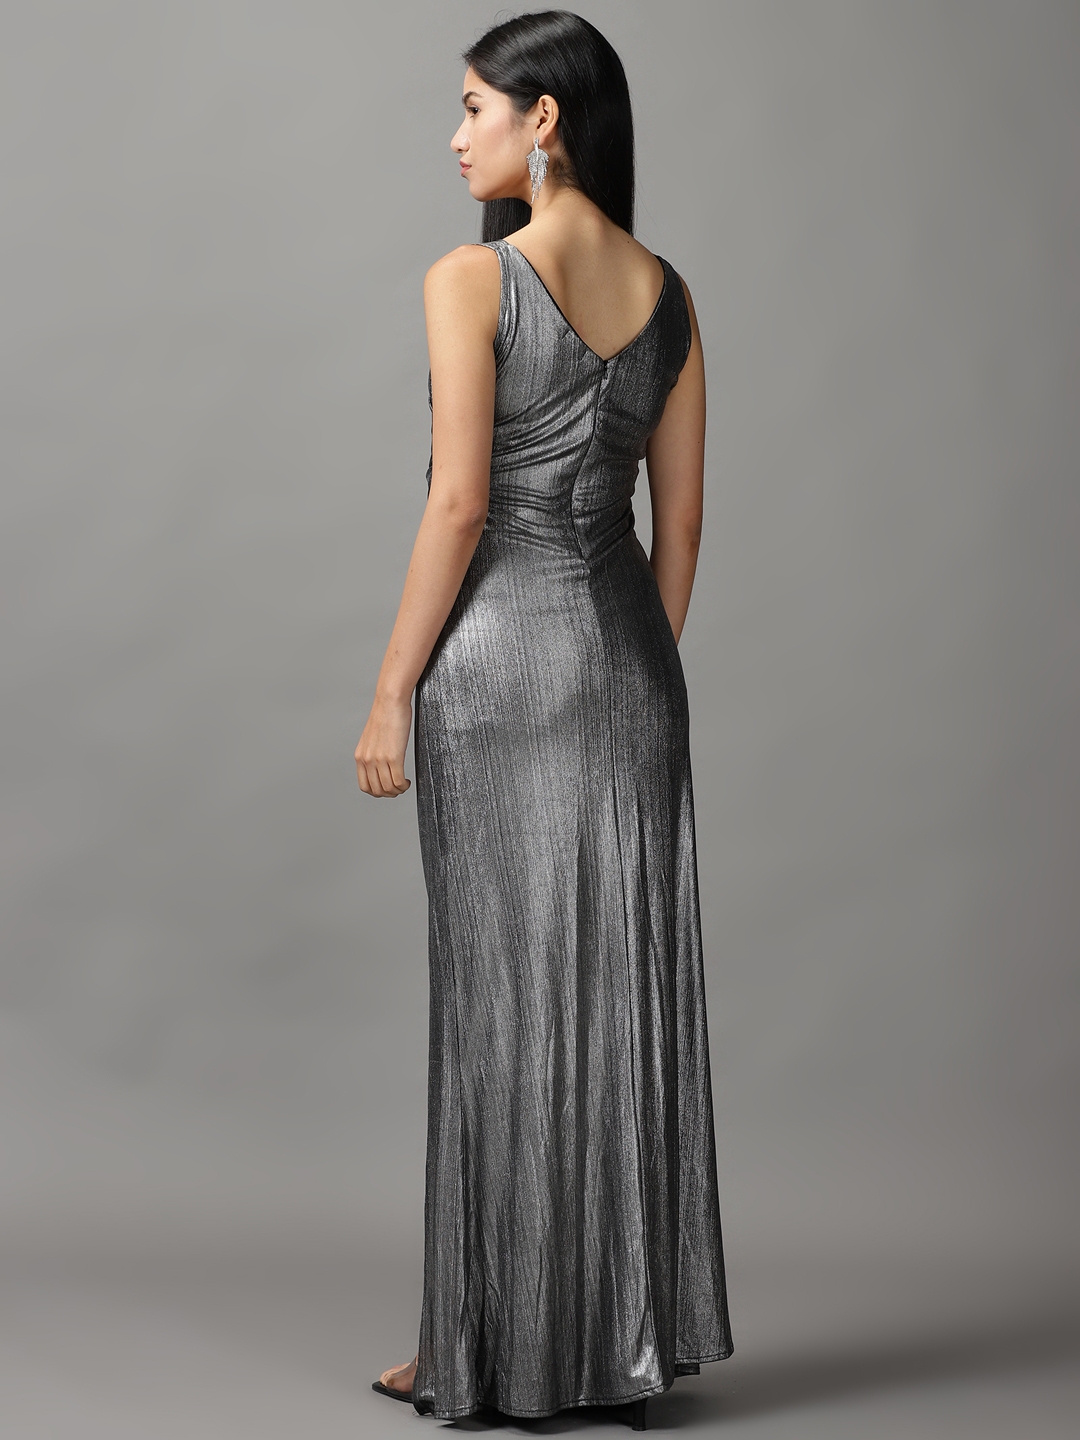 Ralph Lauren Evening Gown, Size 12 – Aiken Tack Exchange